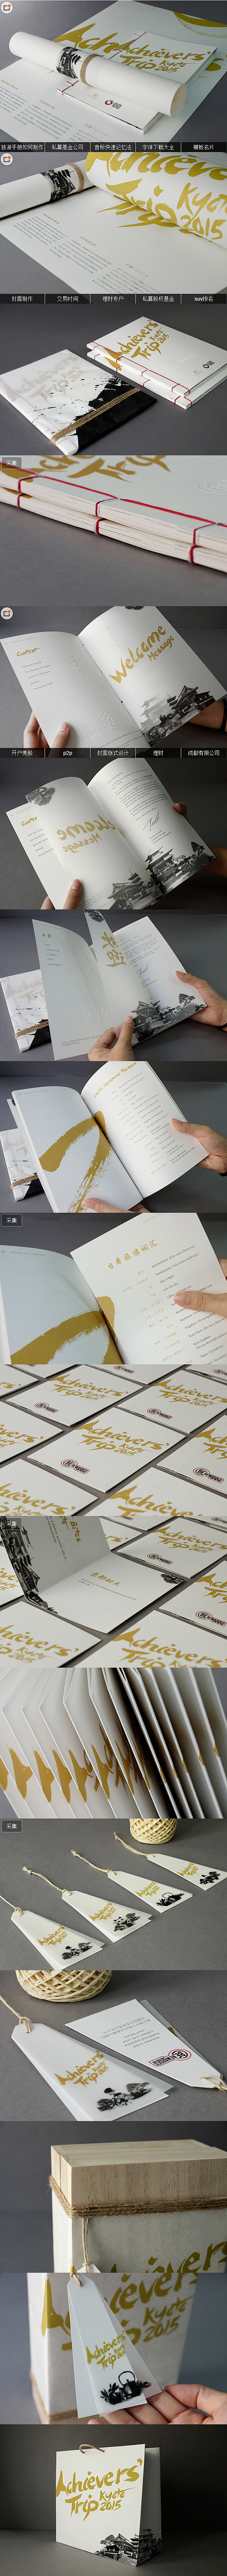 成就之旅京都2015手册版式设计欣赏/旅...